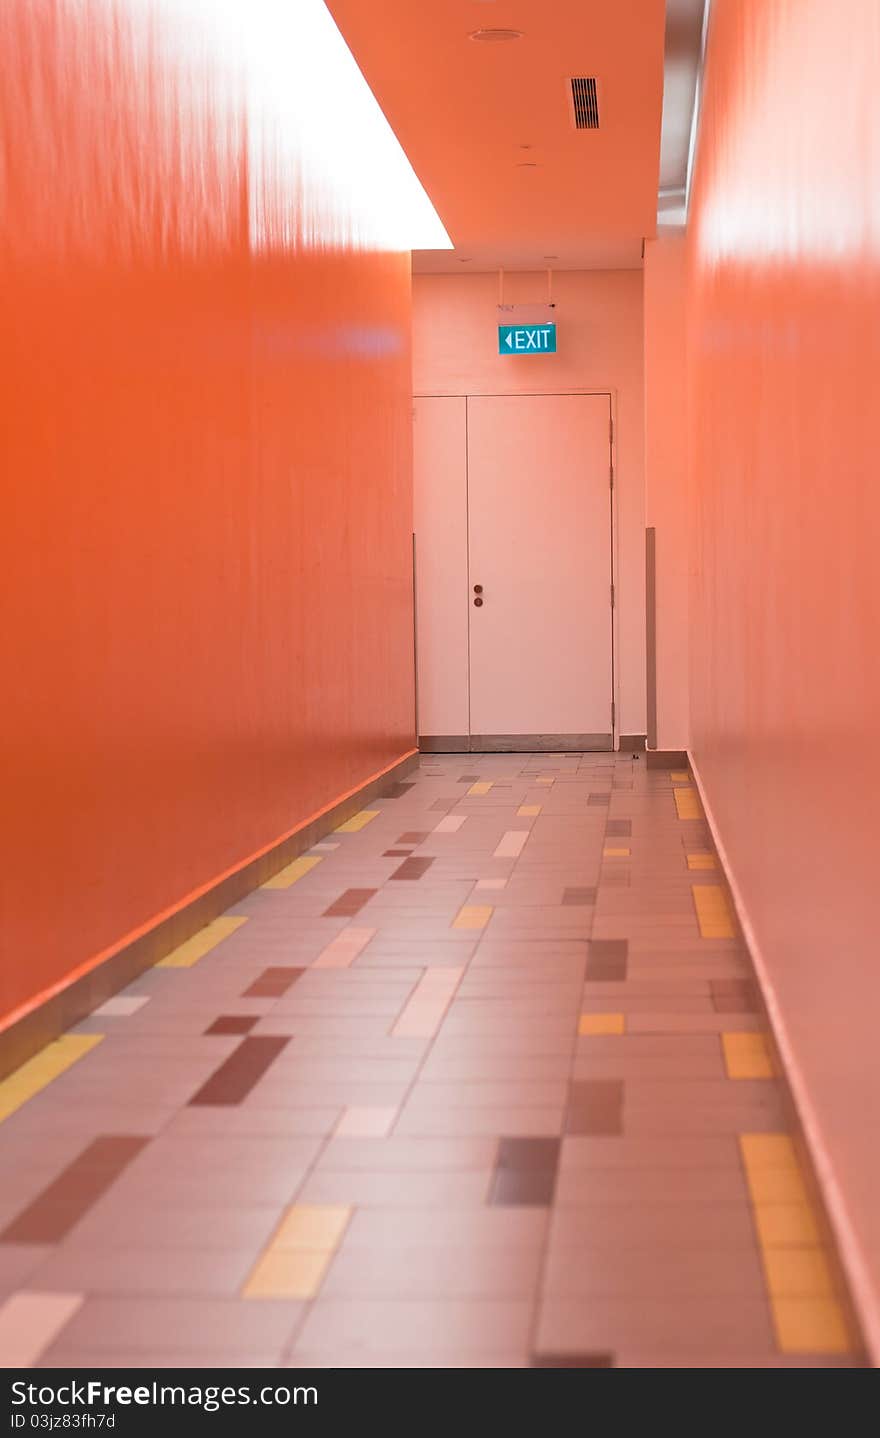 An exit sign on a narrow corridor